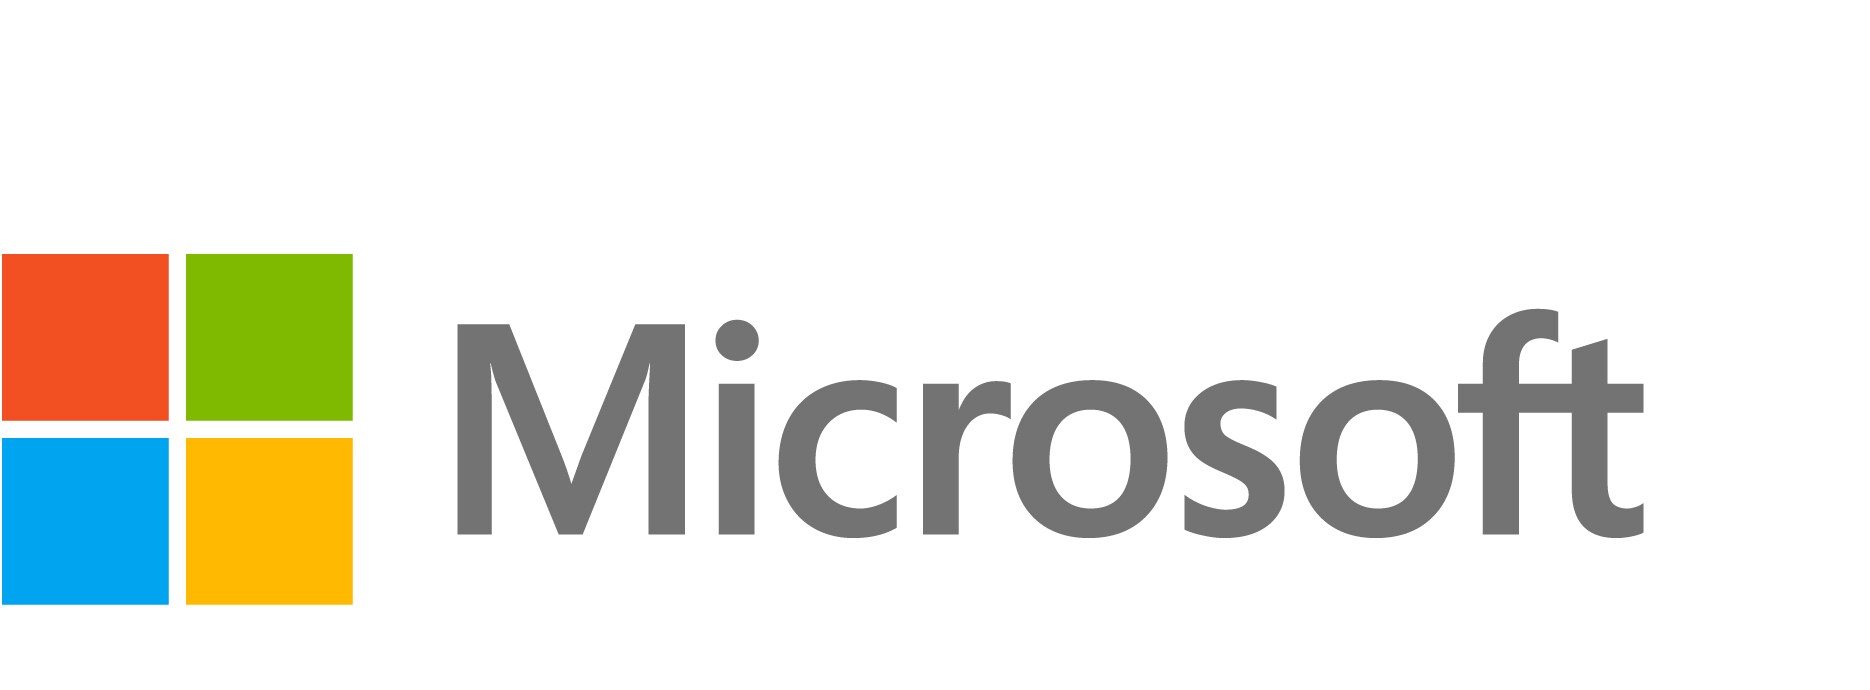 Windows 10/11 Enterprise A5 - subscription license (1 month) - 1 license